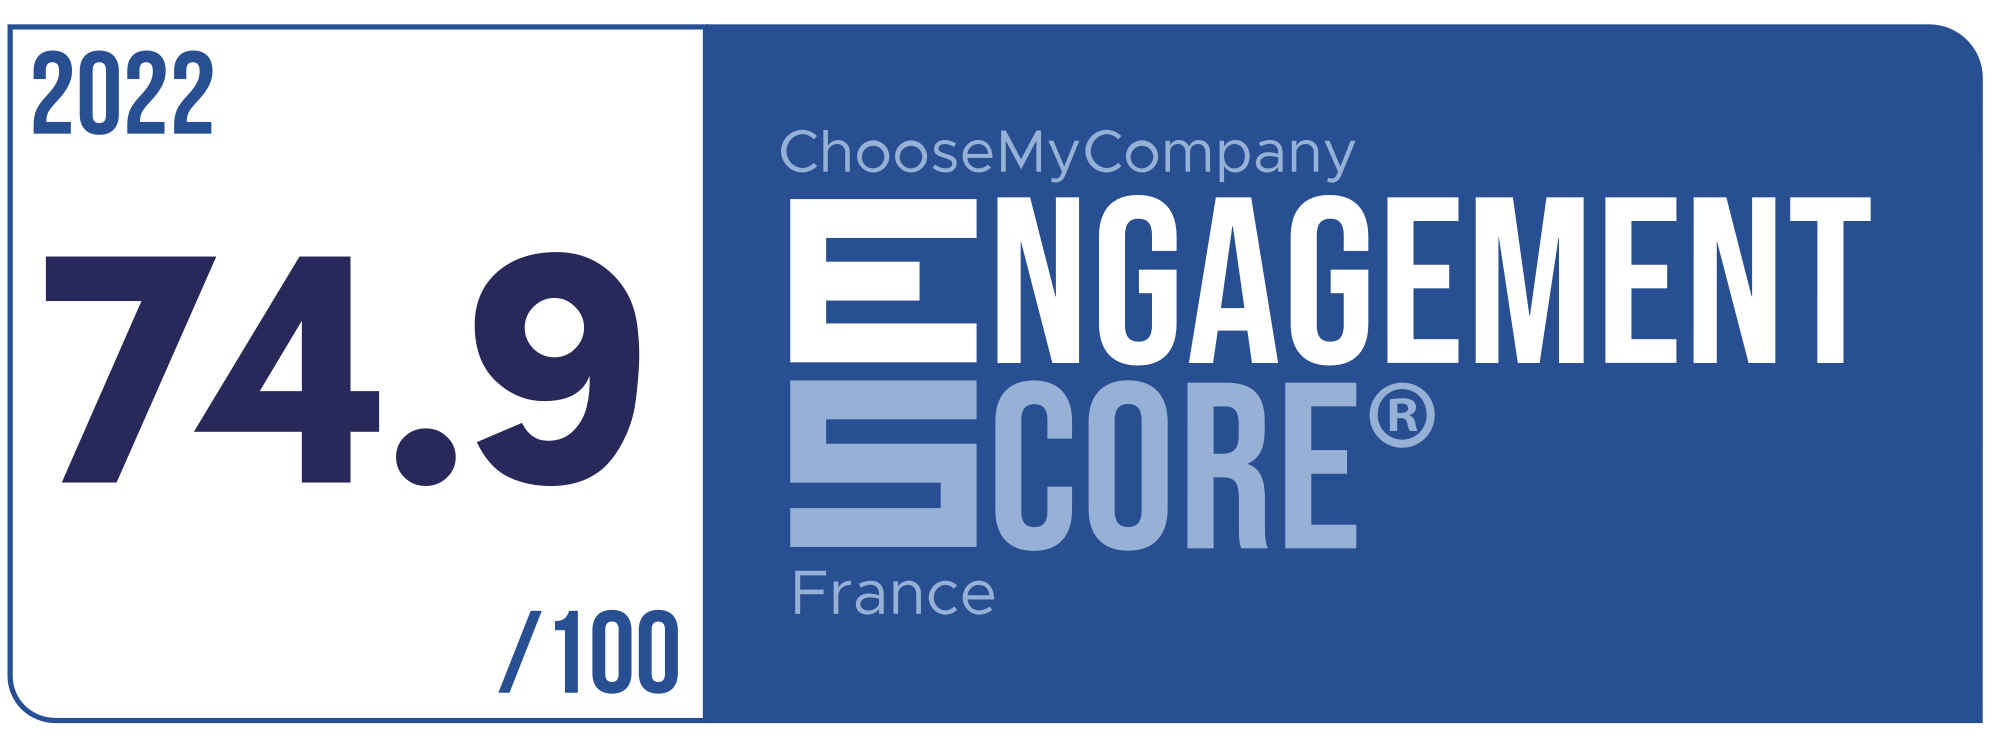 Label Engagement Score 2022 France